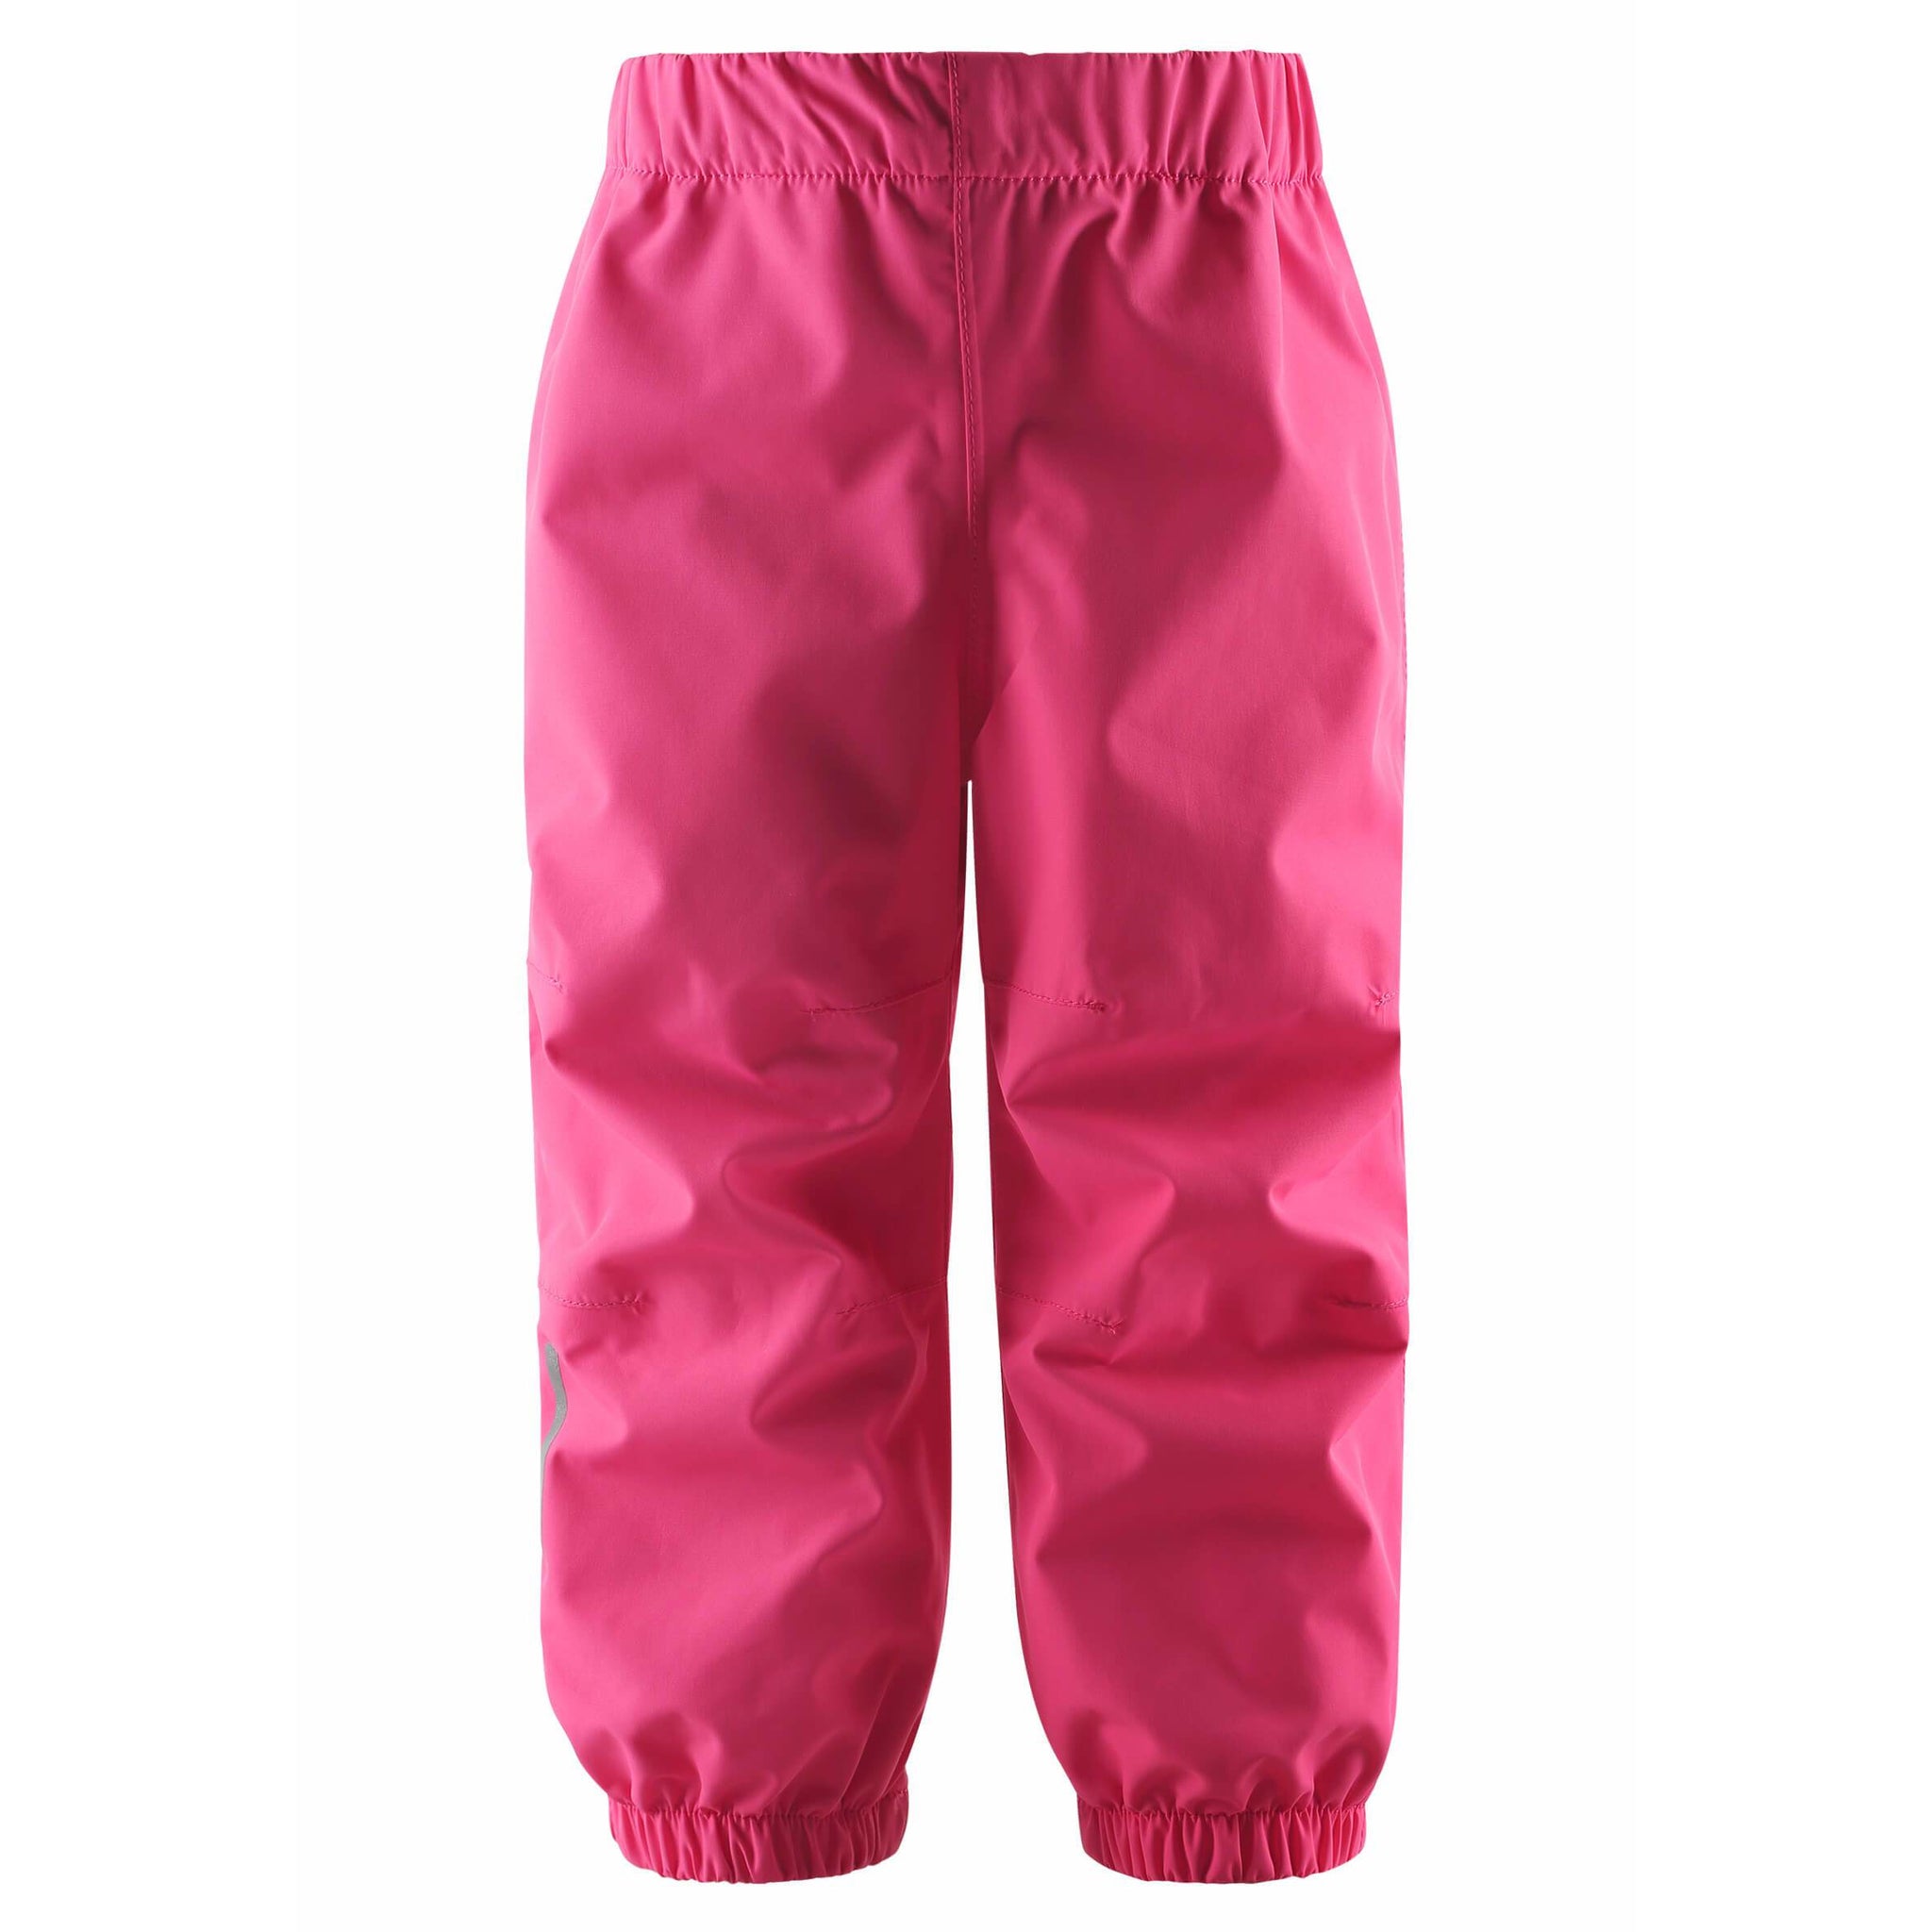 Pantaloni de ploaie impermeabili pentru copii Kaura Reima, Candy pink